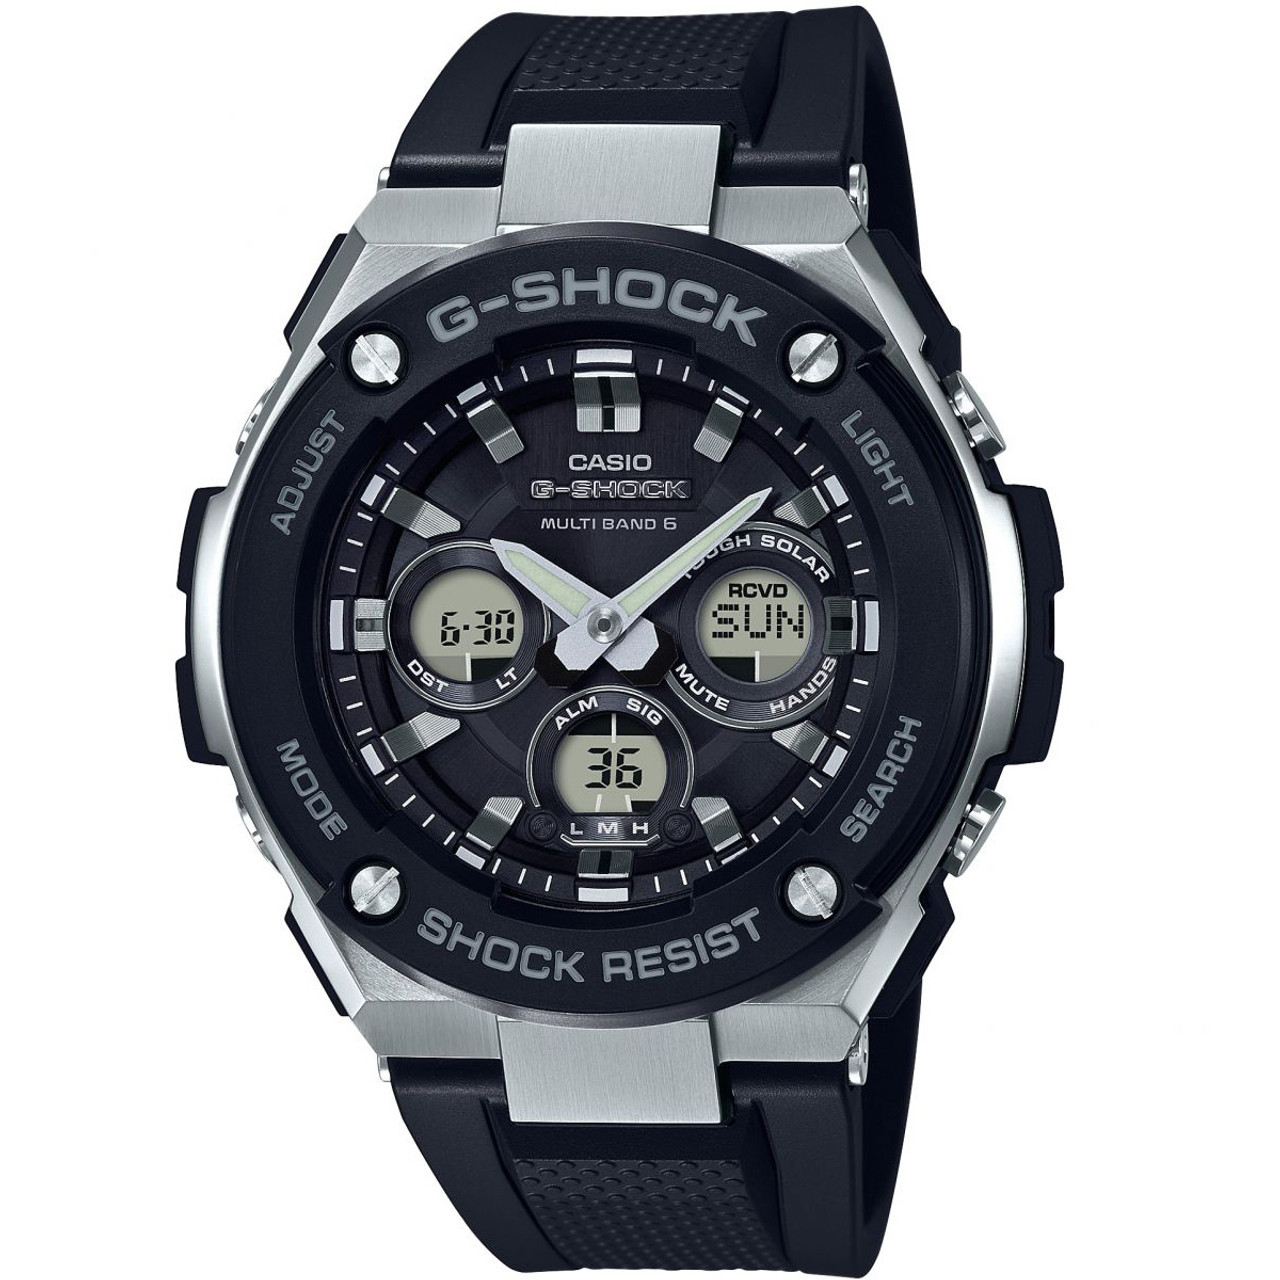 Casio G-shock Tough Solar Radio Controlled Watch GST-W300-1AER